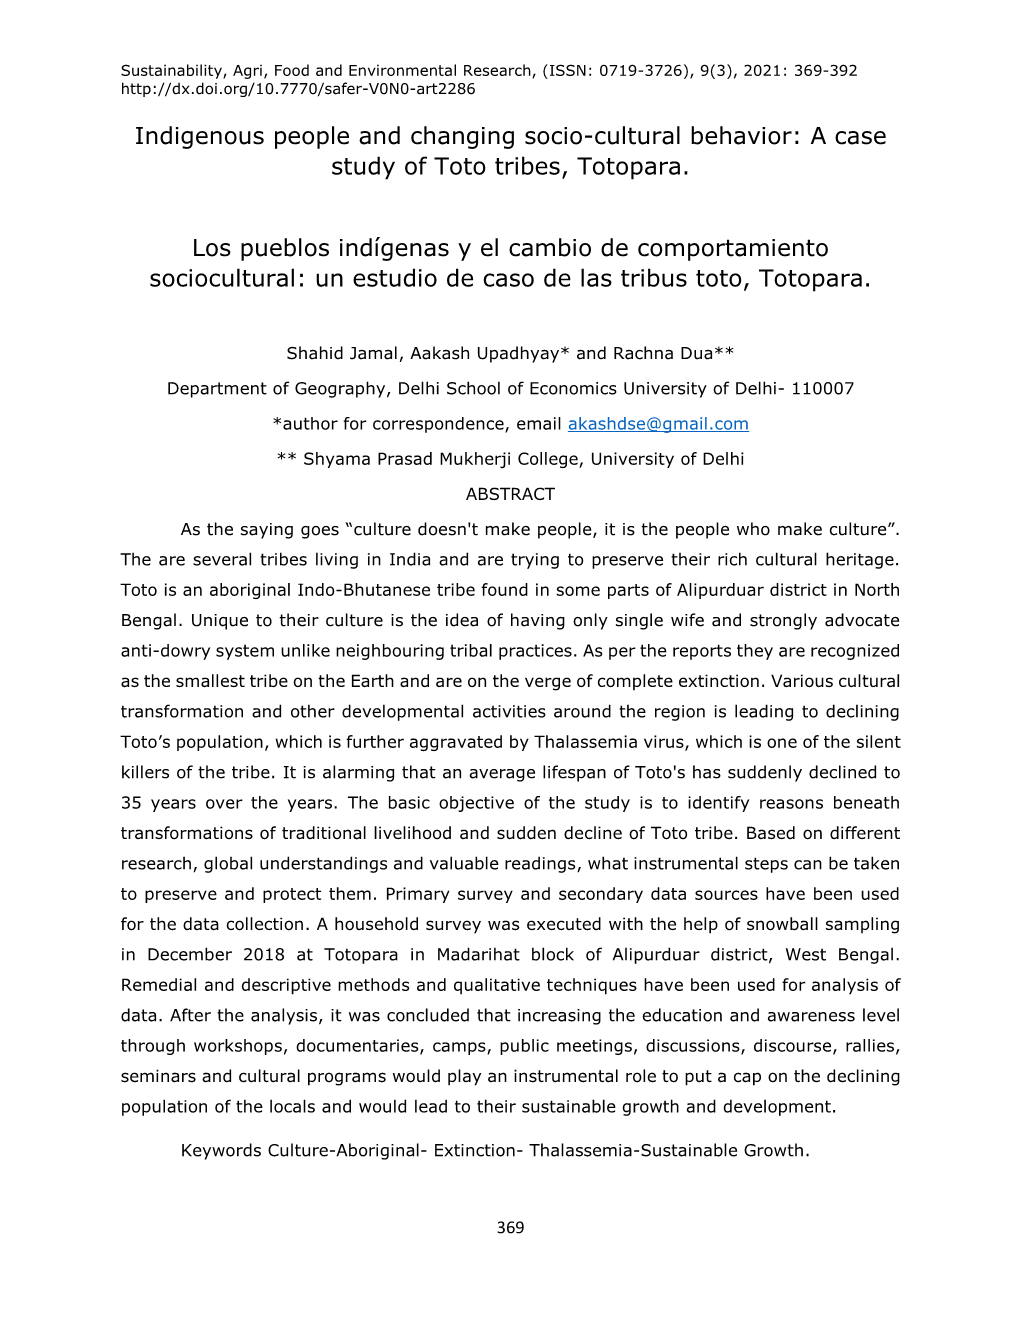 A Case Study of Toto Tribes, Totopara. Los Pueblos Indígenas Y El Cambi